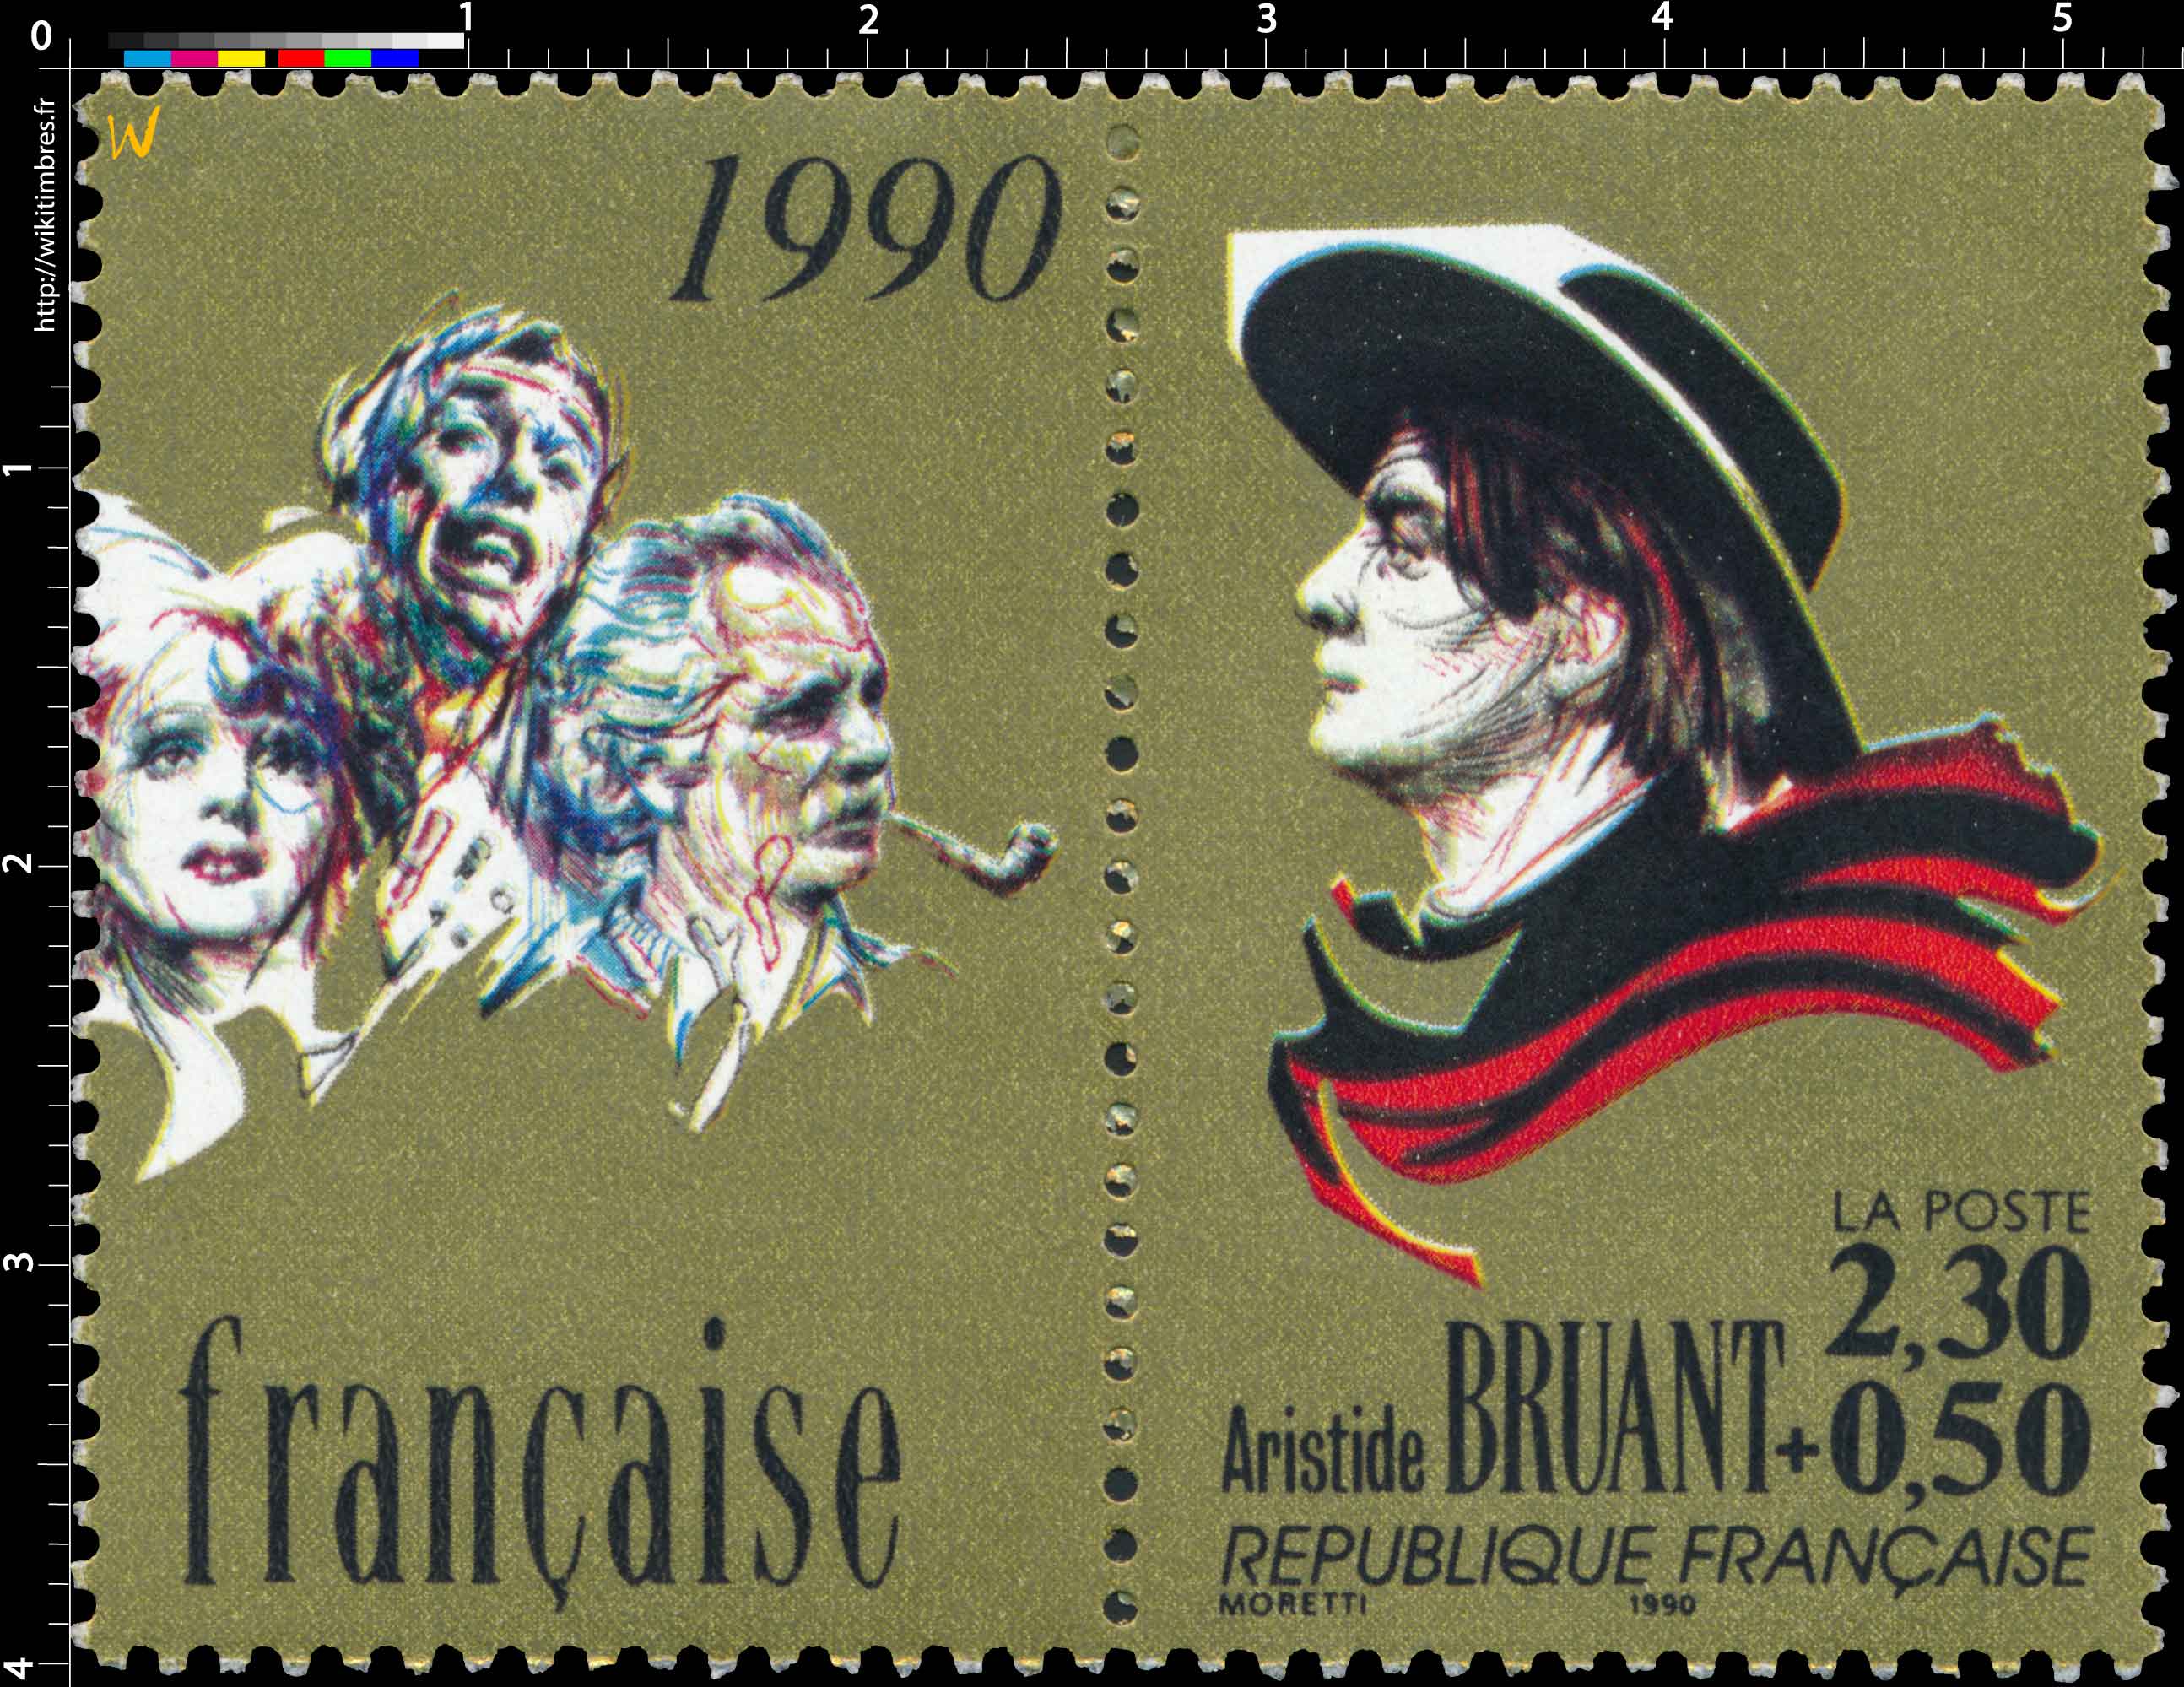 1990 Aristide BRUANT